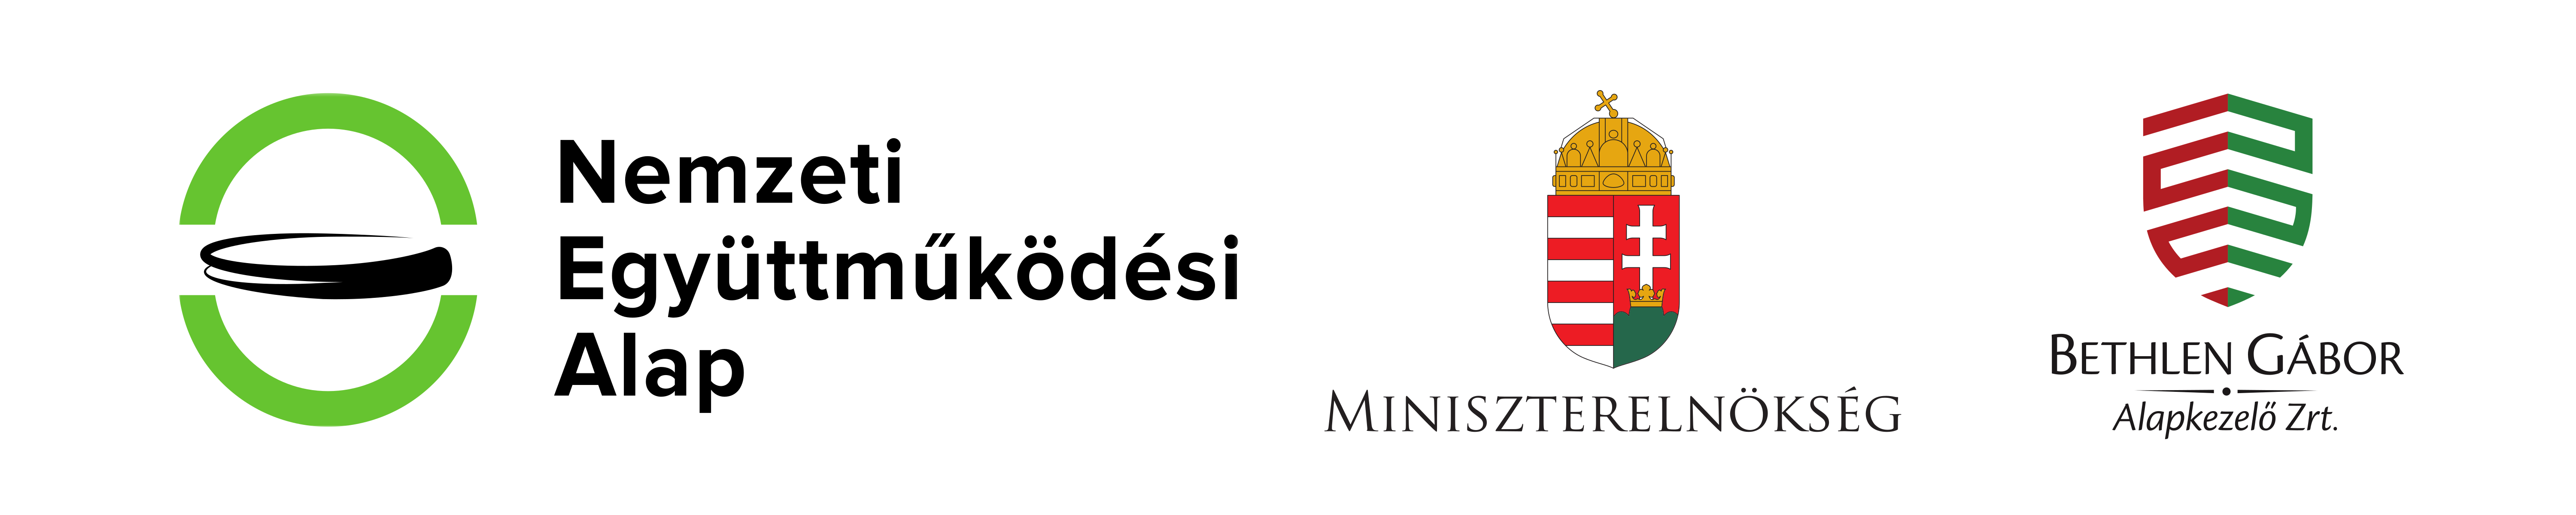 Nemzetközi Együttműködési Alap, Miniszterelnökség, Bethlen Gábor Alapkezelő Zrt. logó